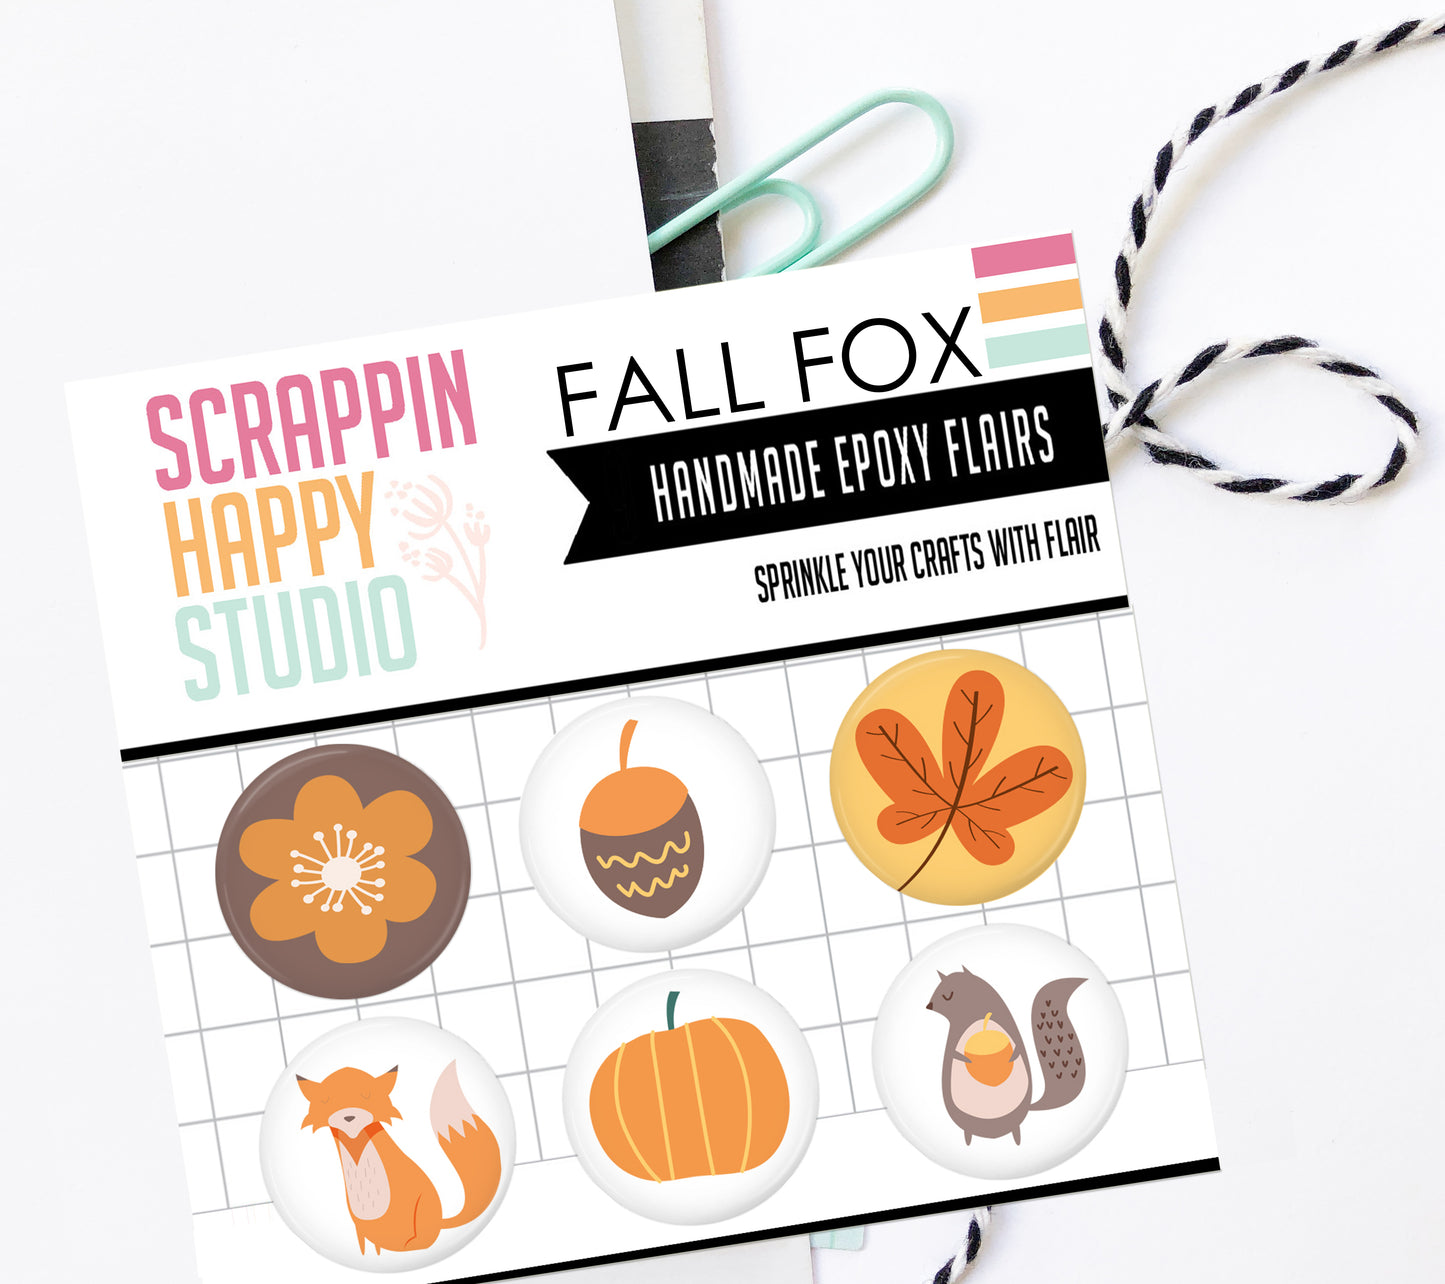 Fall Fox Epoxy Flair